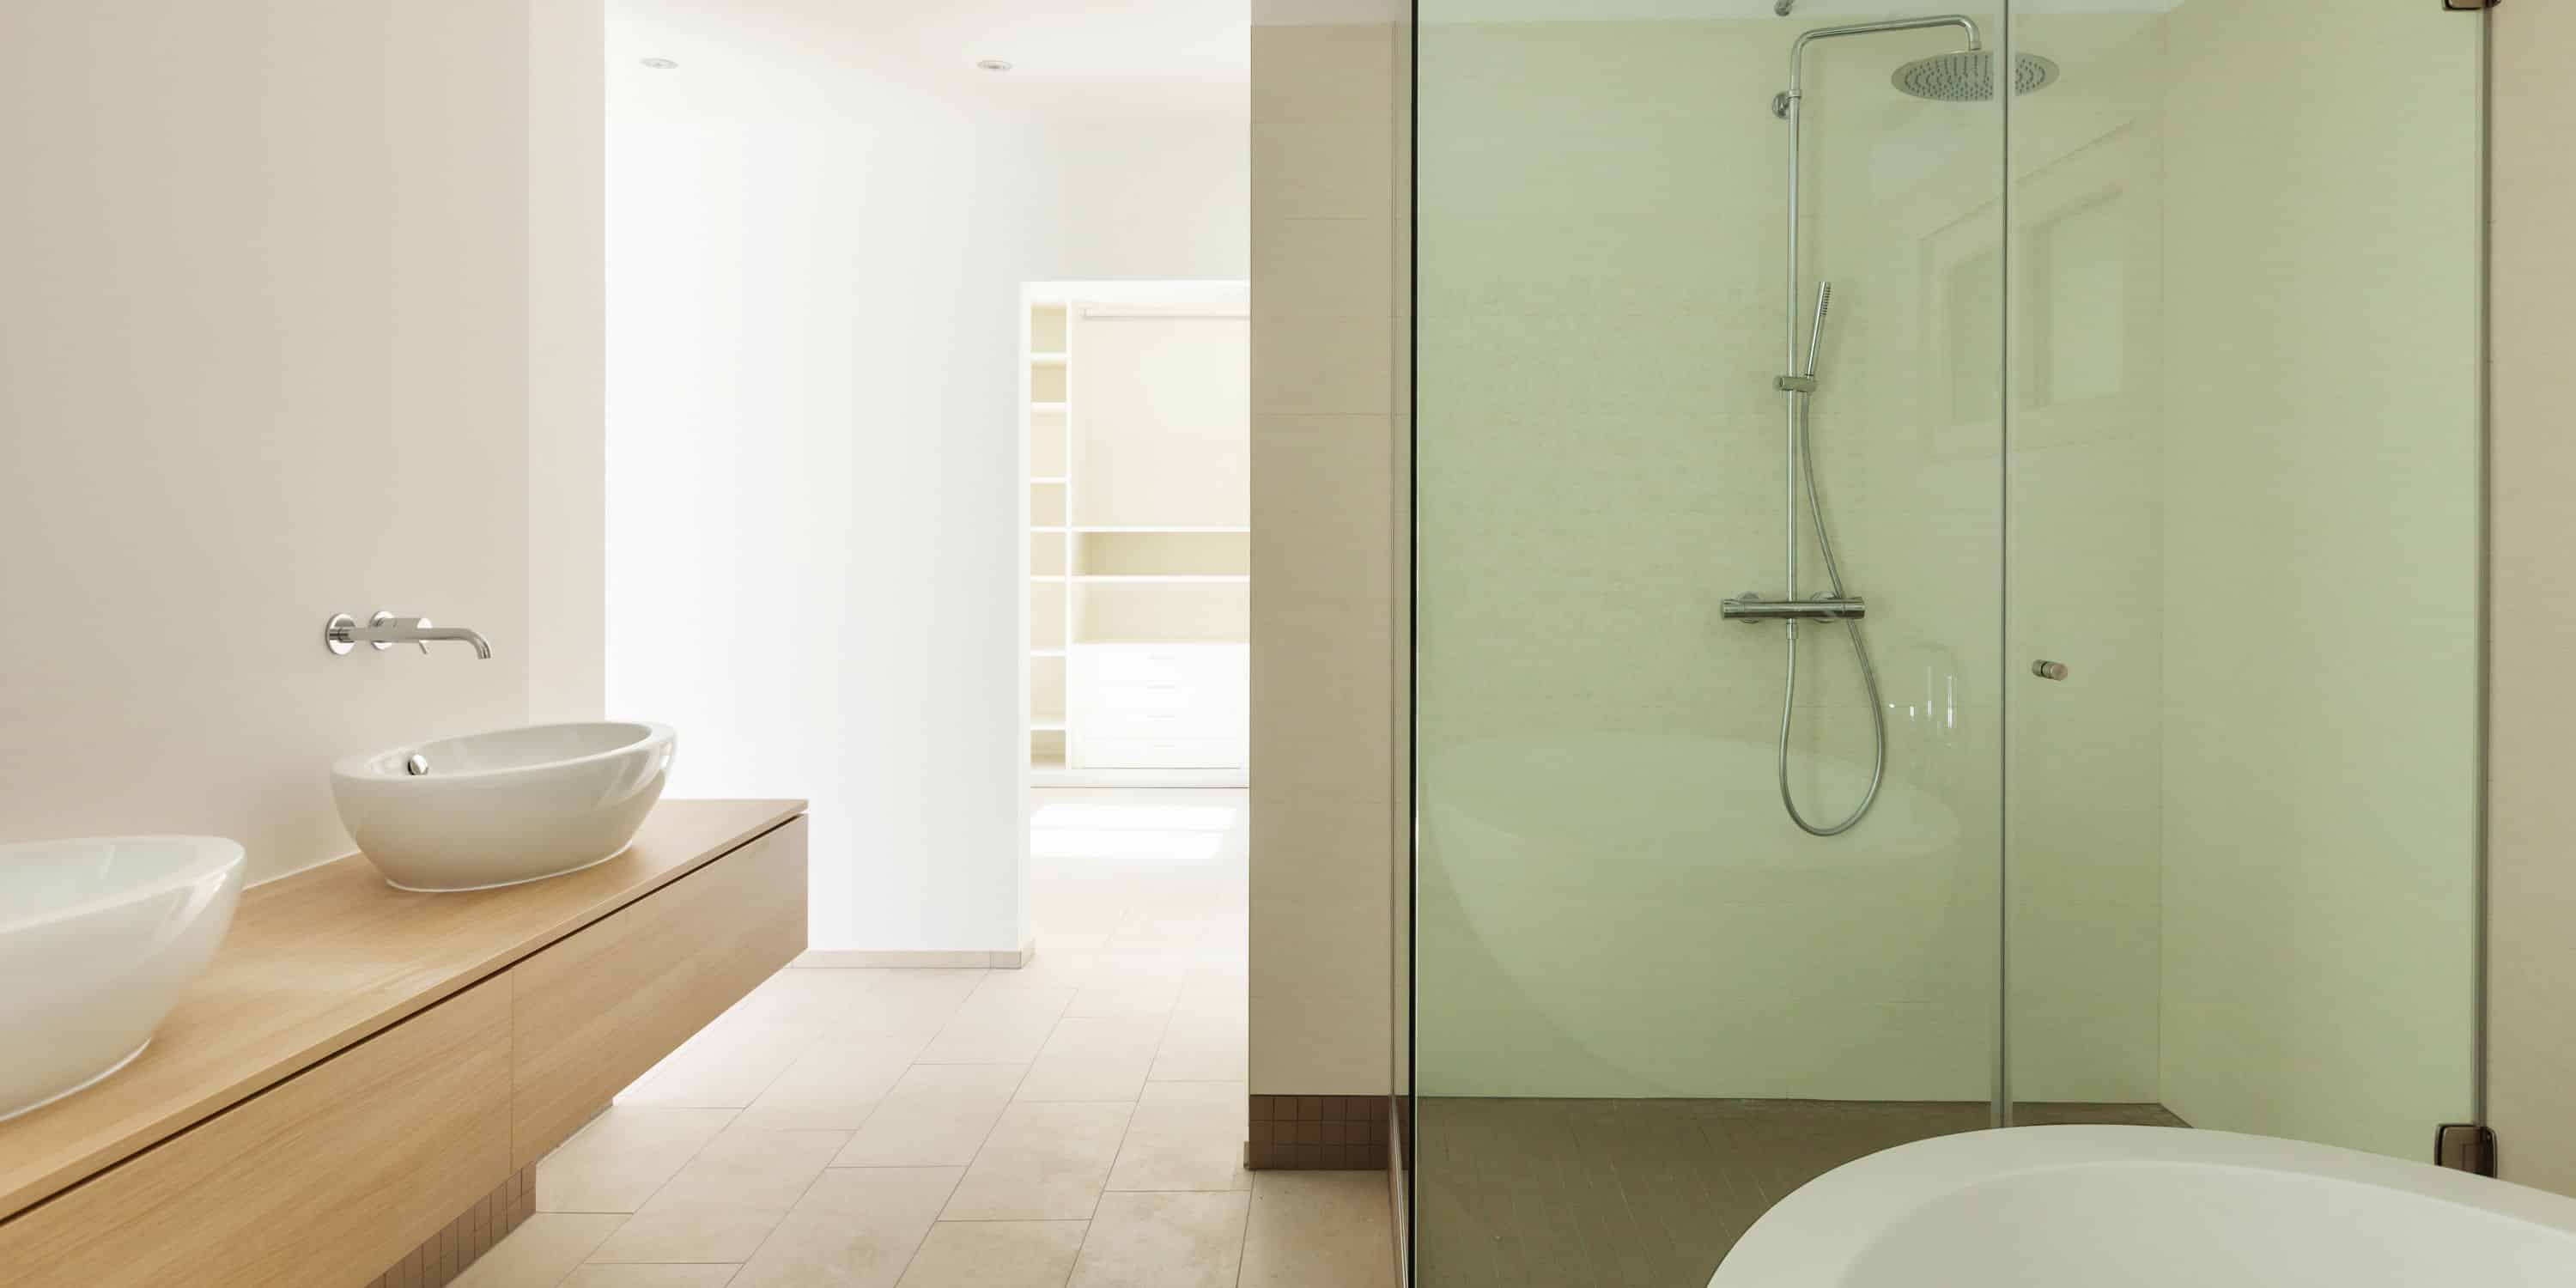 badkamer renoveren prijs